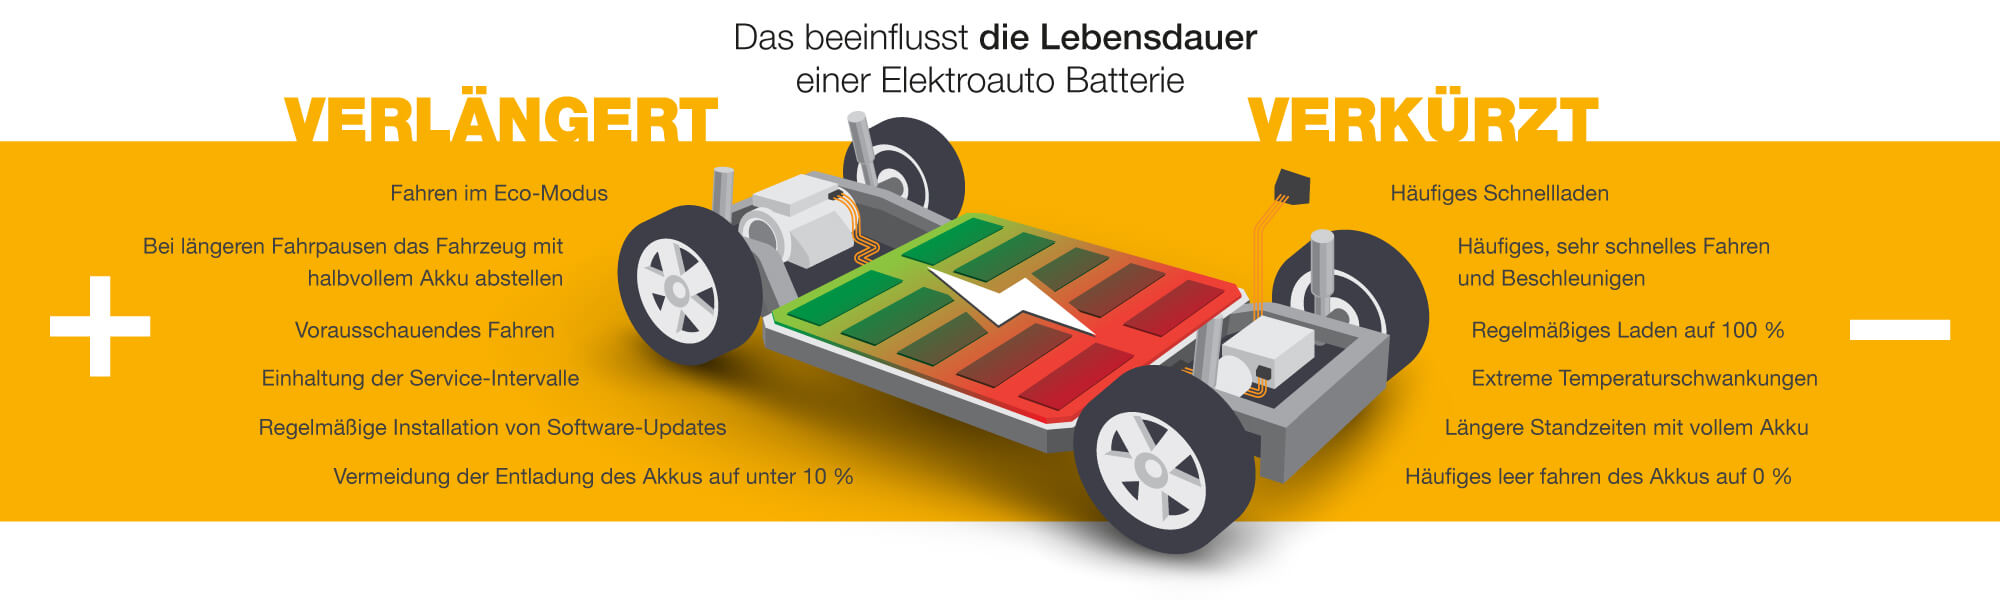 Elektroauto-Batterie – das ist wichtig!